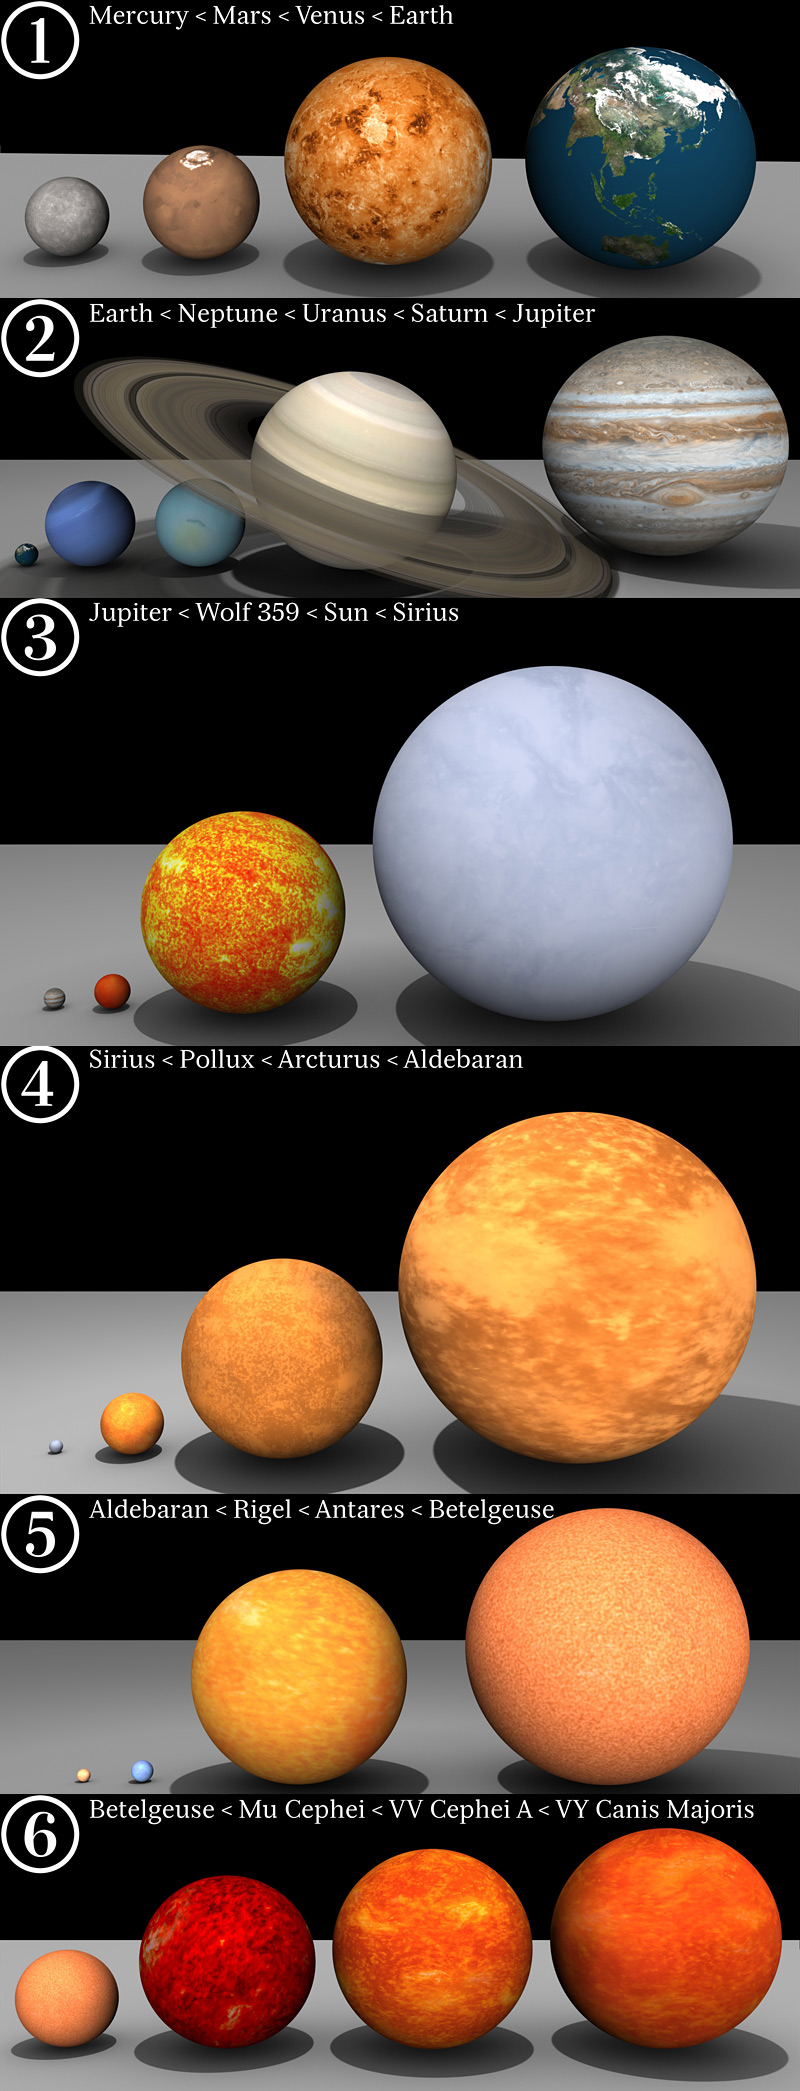 comparaison de la taille des étoiles et des planètes